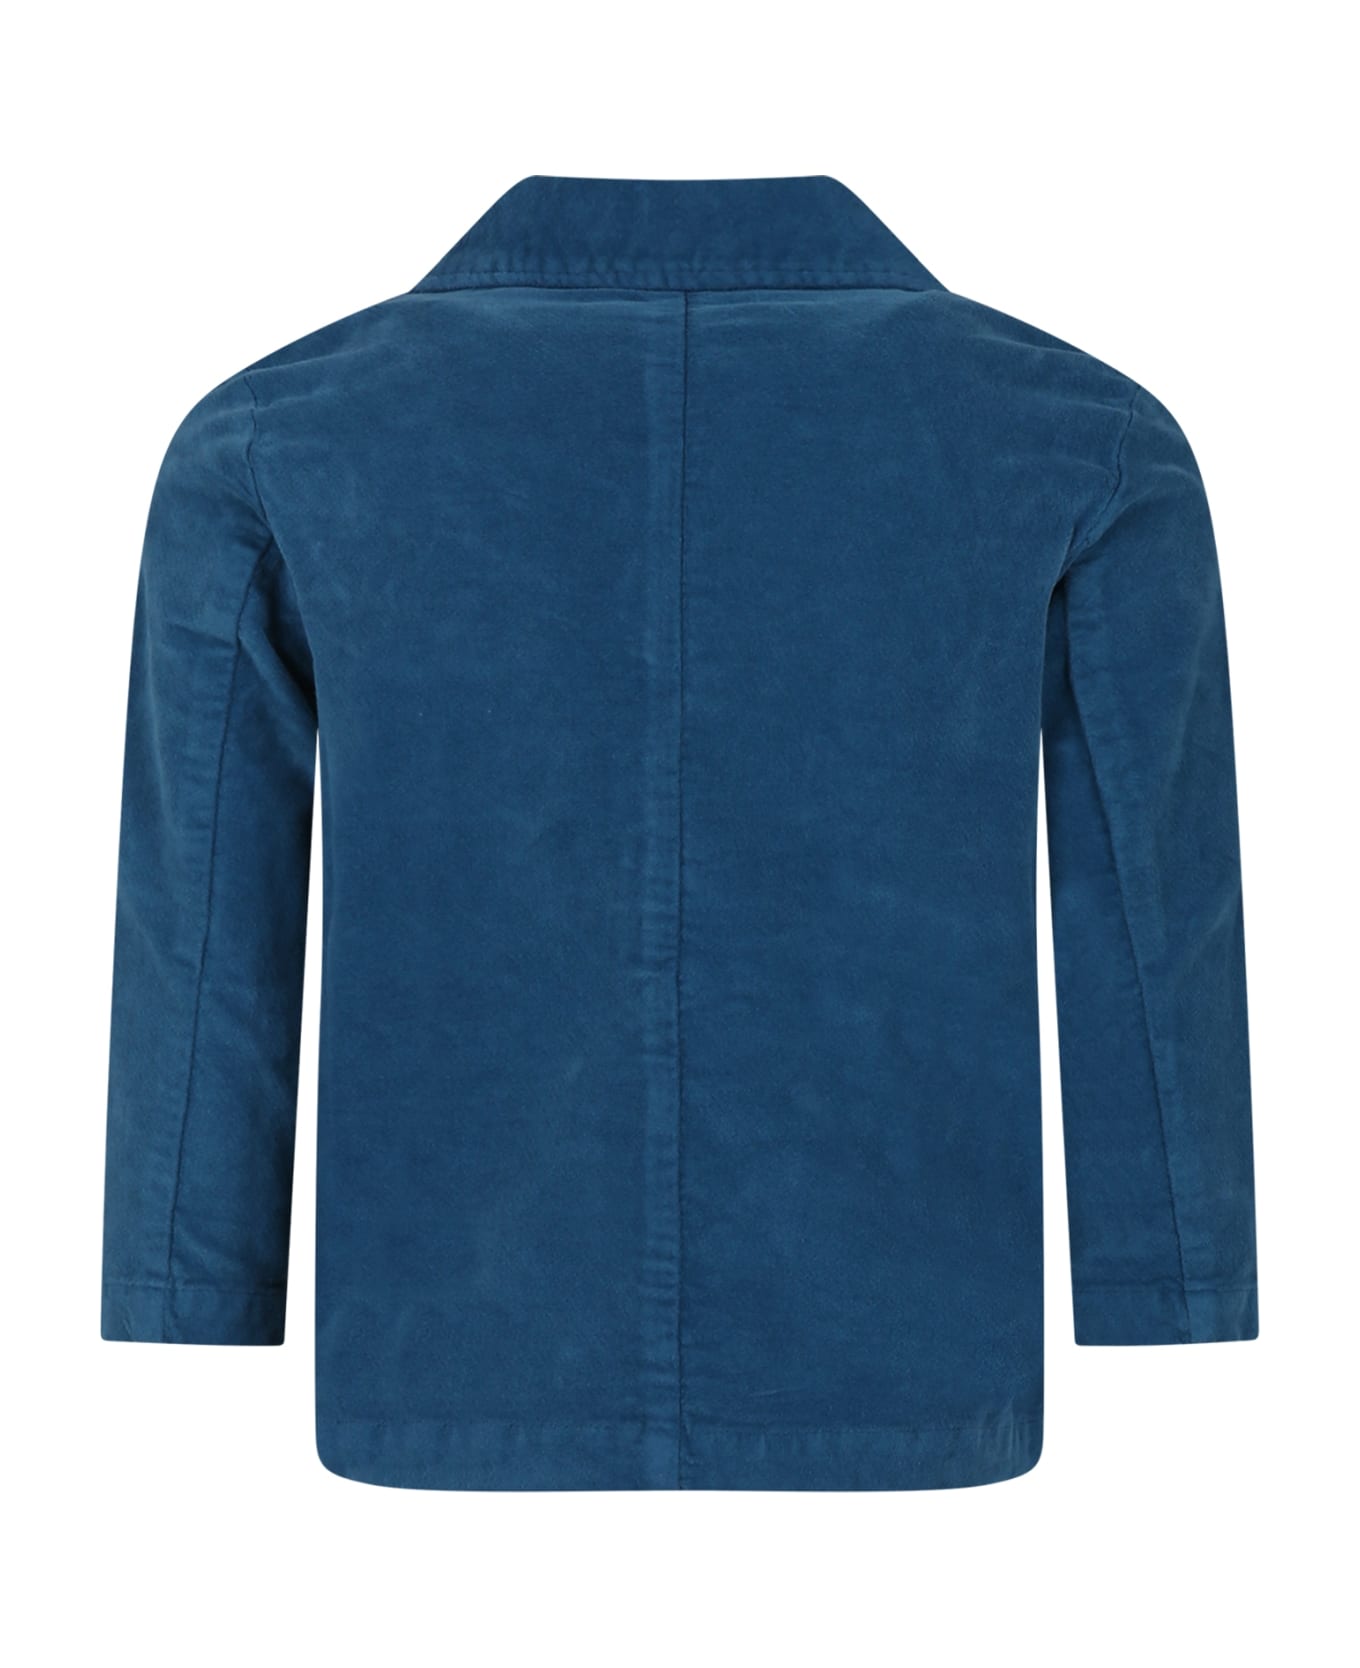 Zhoe & Tobiah Light Blue Jacket For Boy - Light Blue